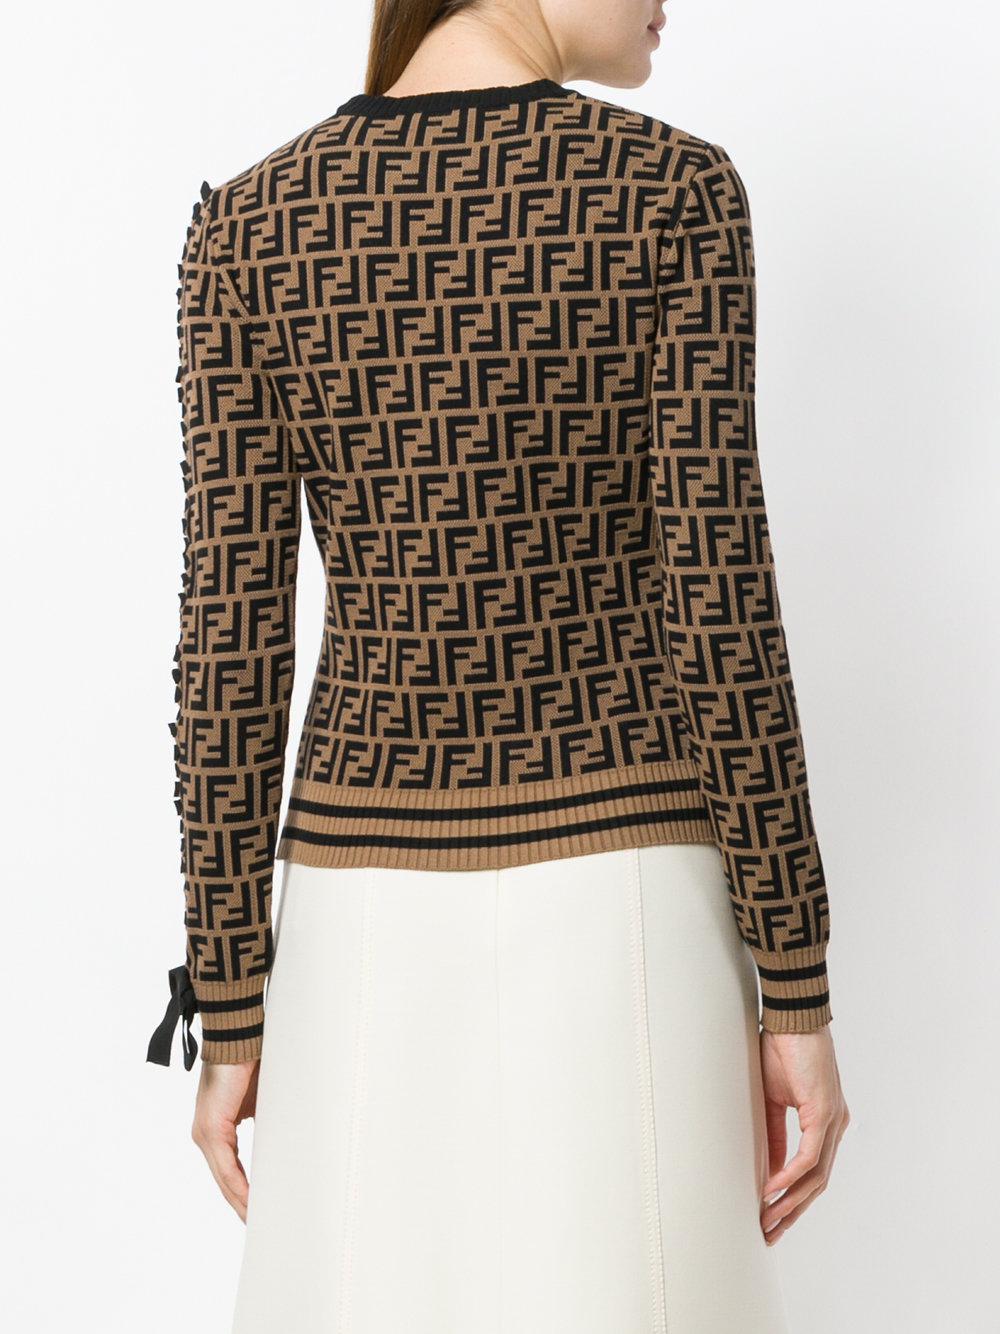 Fendi Fur Logo Long-sleeve Sweater in Brown - Lyst